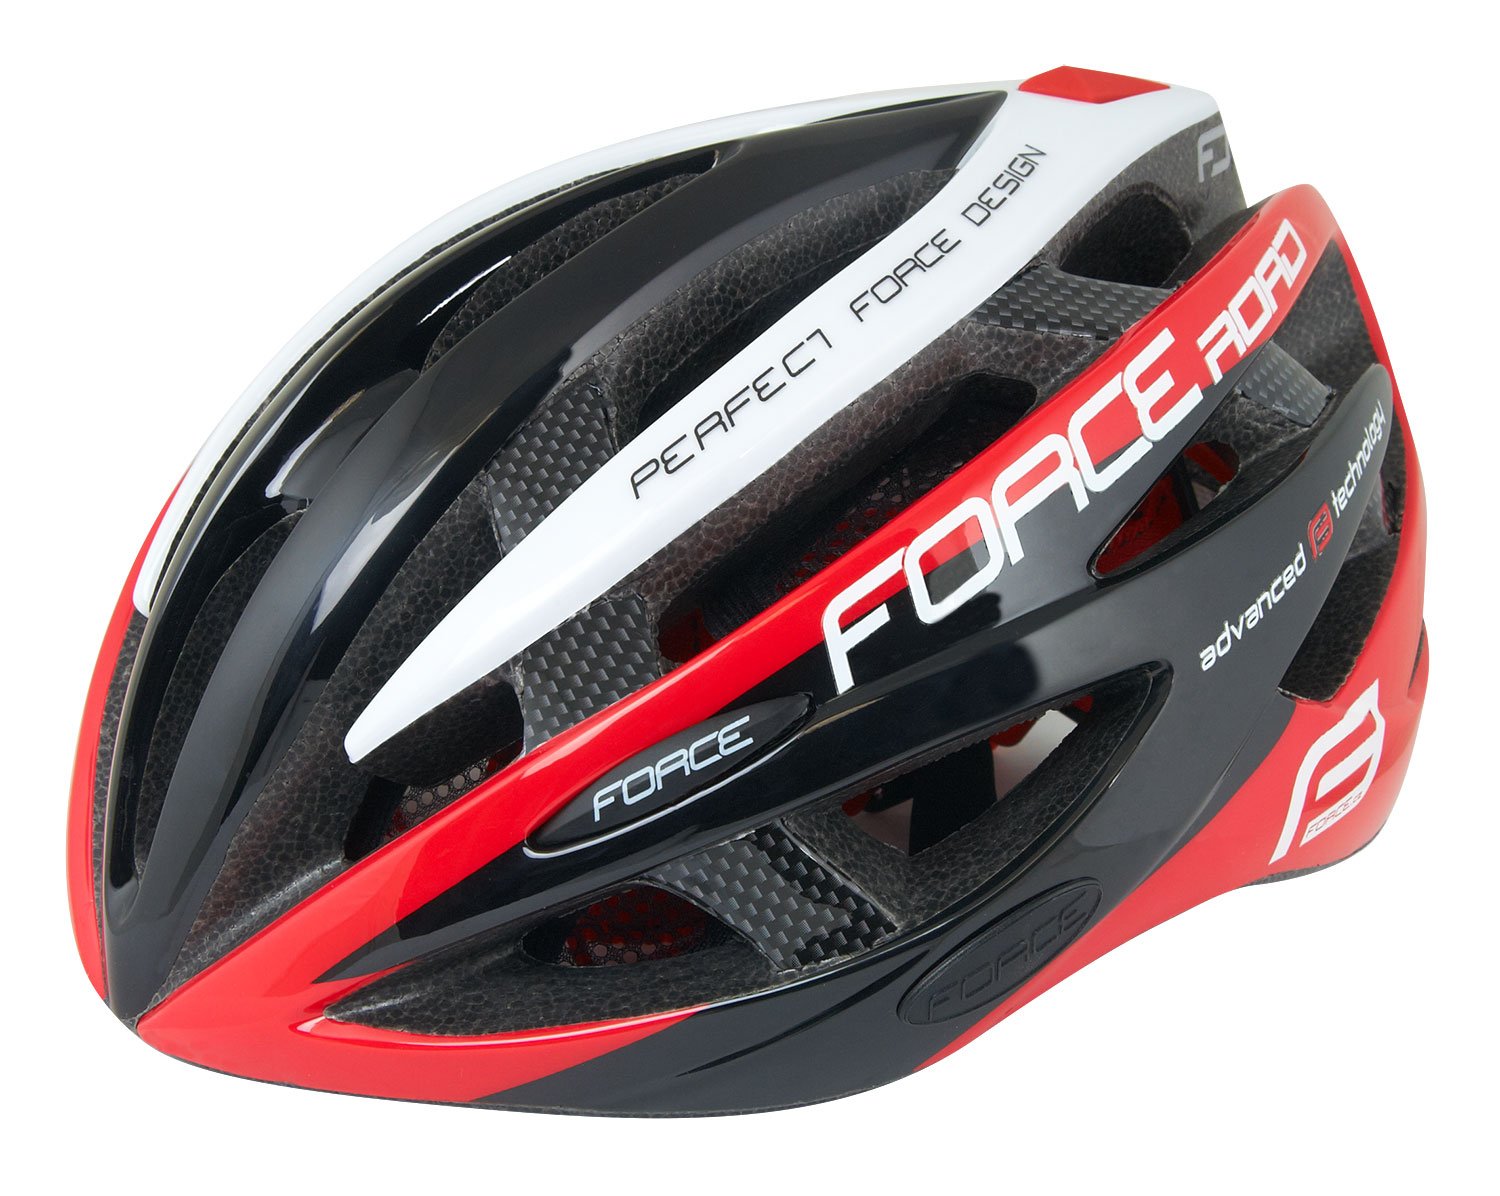 Force Road black/red helmet